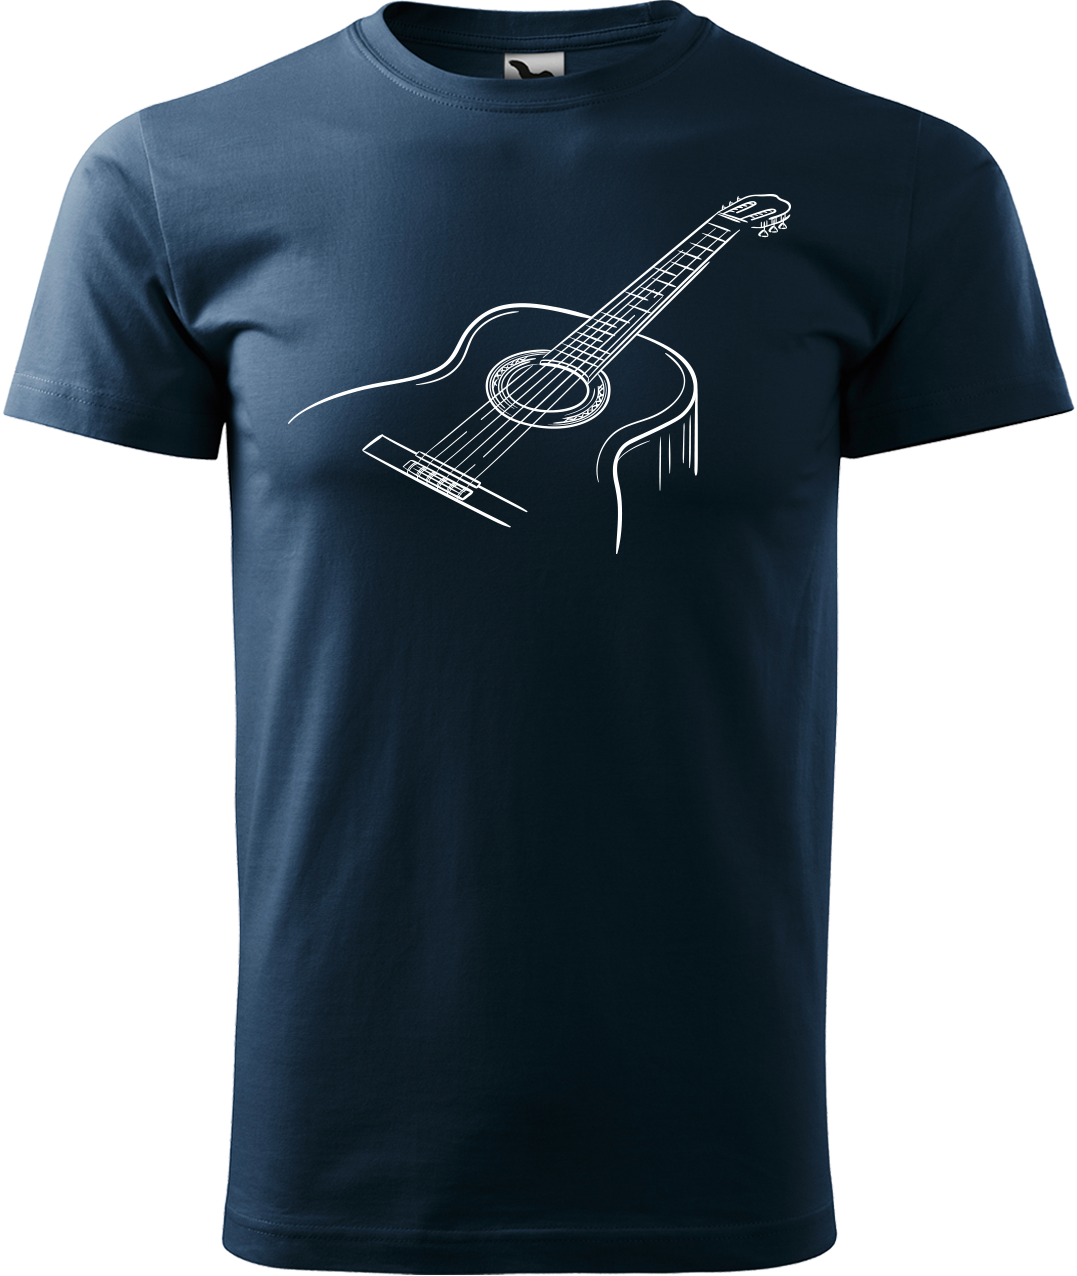 Pánské tričko s kytarou - Klasická kytara Velikost: XL, Barva: Námořní modrá (02)